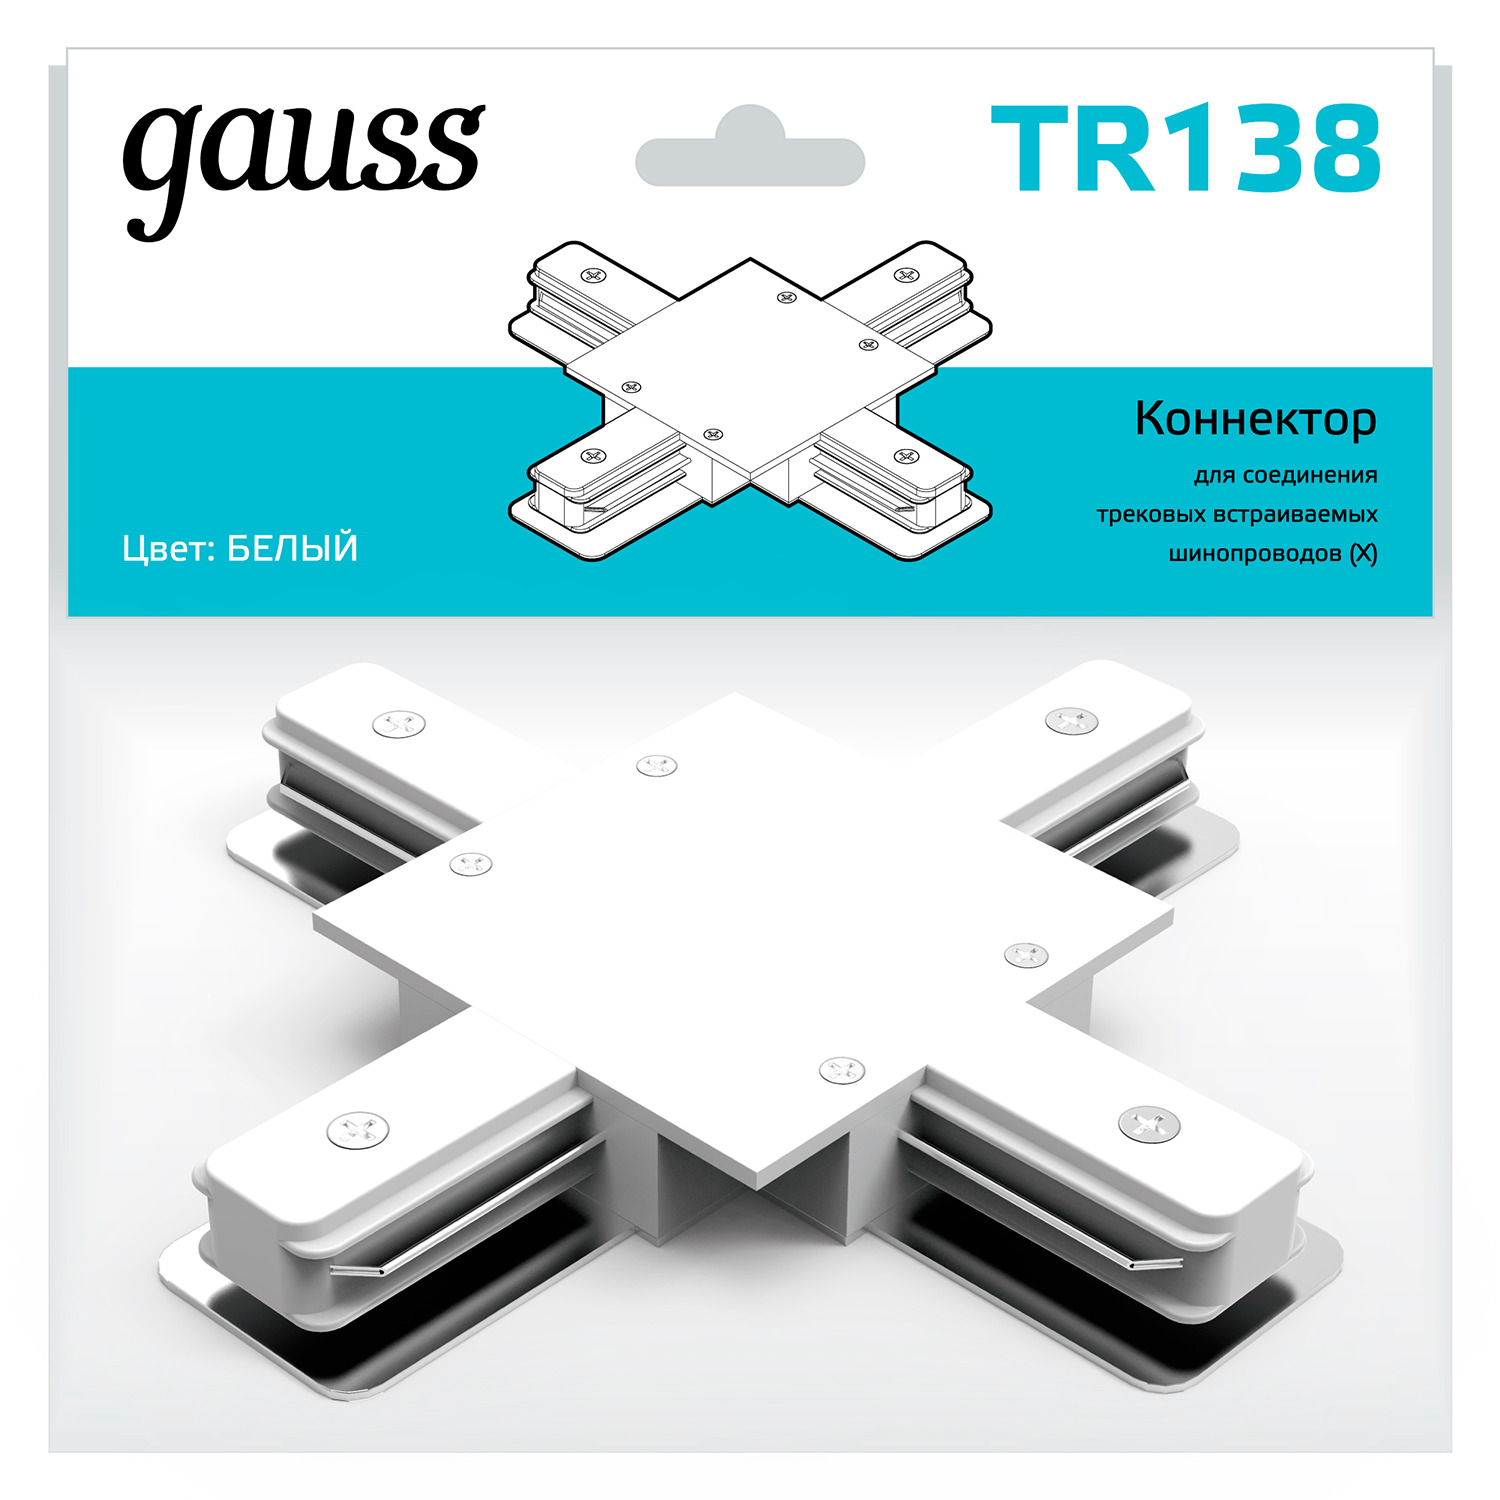 Коннектор Gauss для встраиваемых трековых шинопроводов (+) белый коннектор gauss для встраиваемых трековых шинопроводов прямой i белый